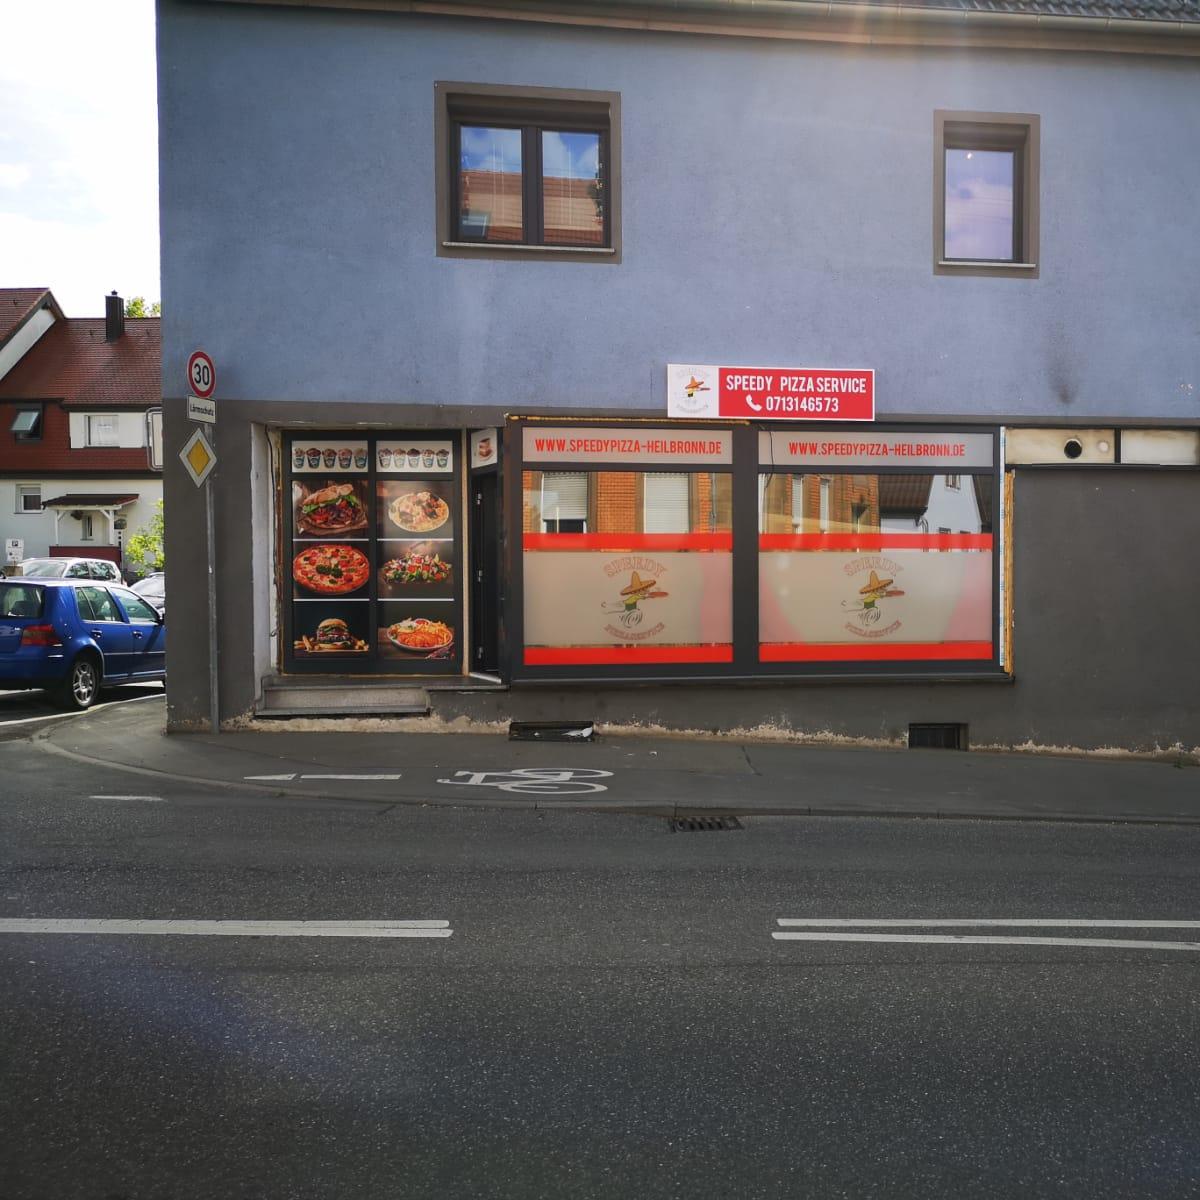 Restaurant "Speedy Pizza Service" in Heilbronn